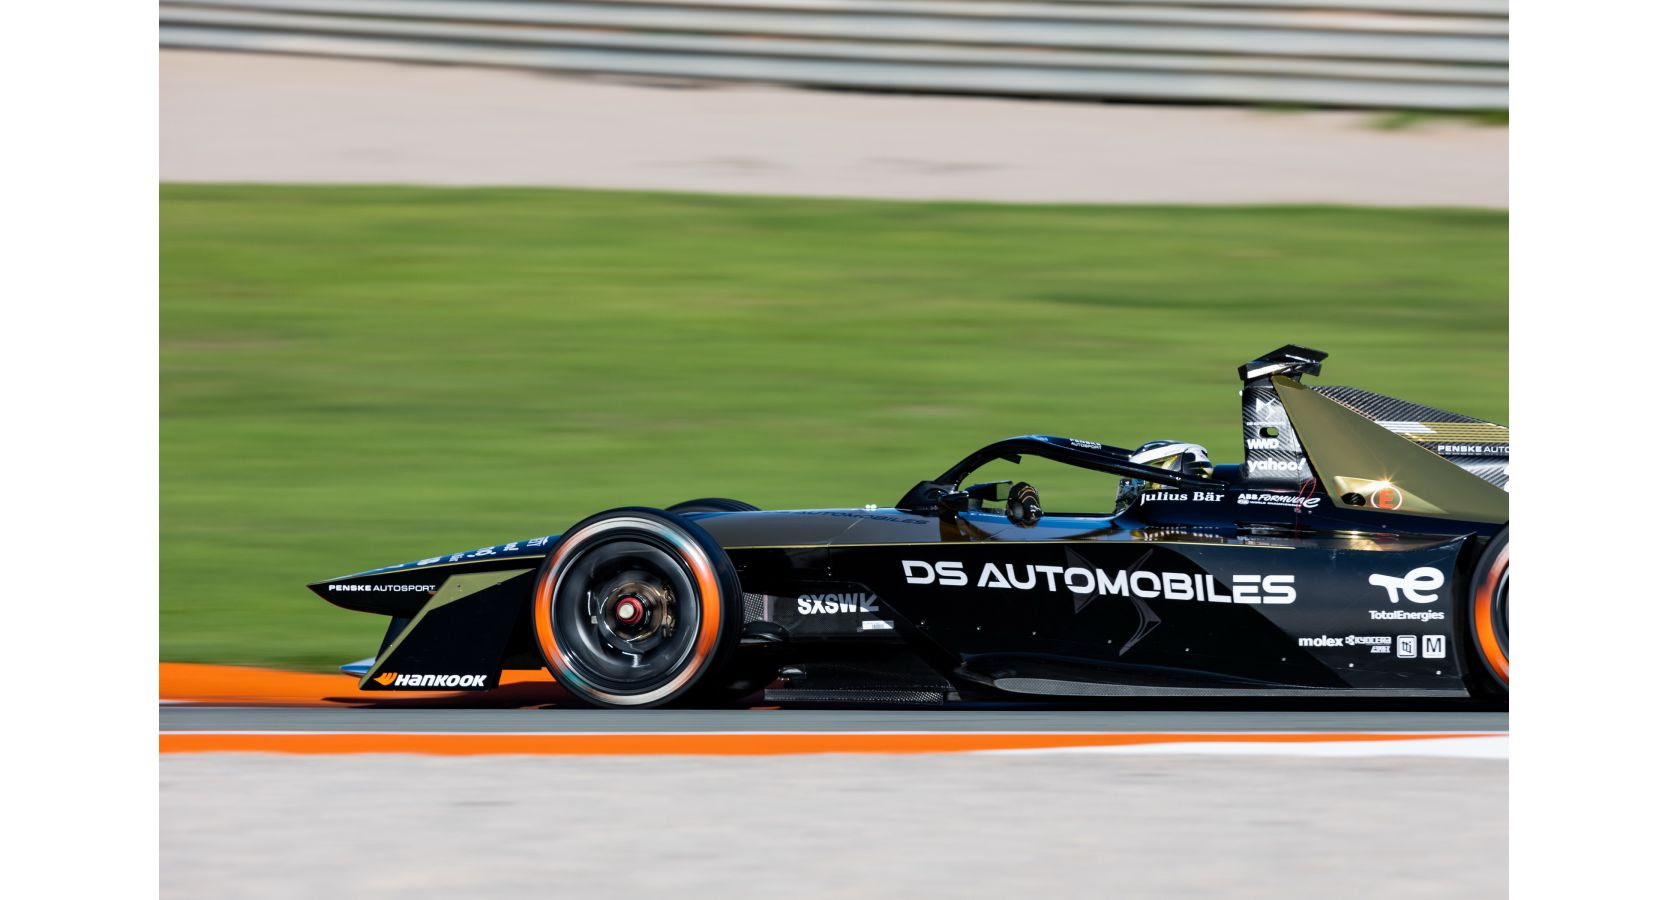 DS AUTOMOBILES a la conquista de nuevos títulos en la novena temporada de la Fórmula E